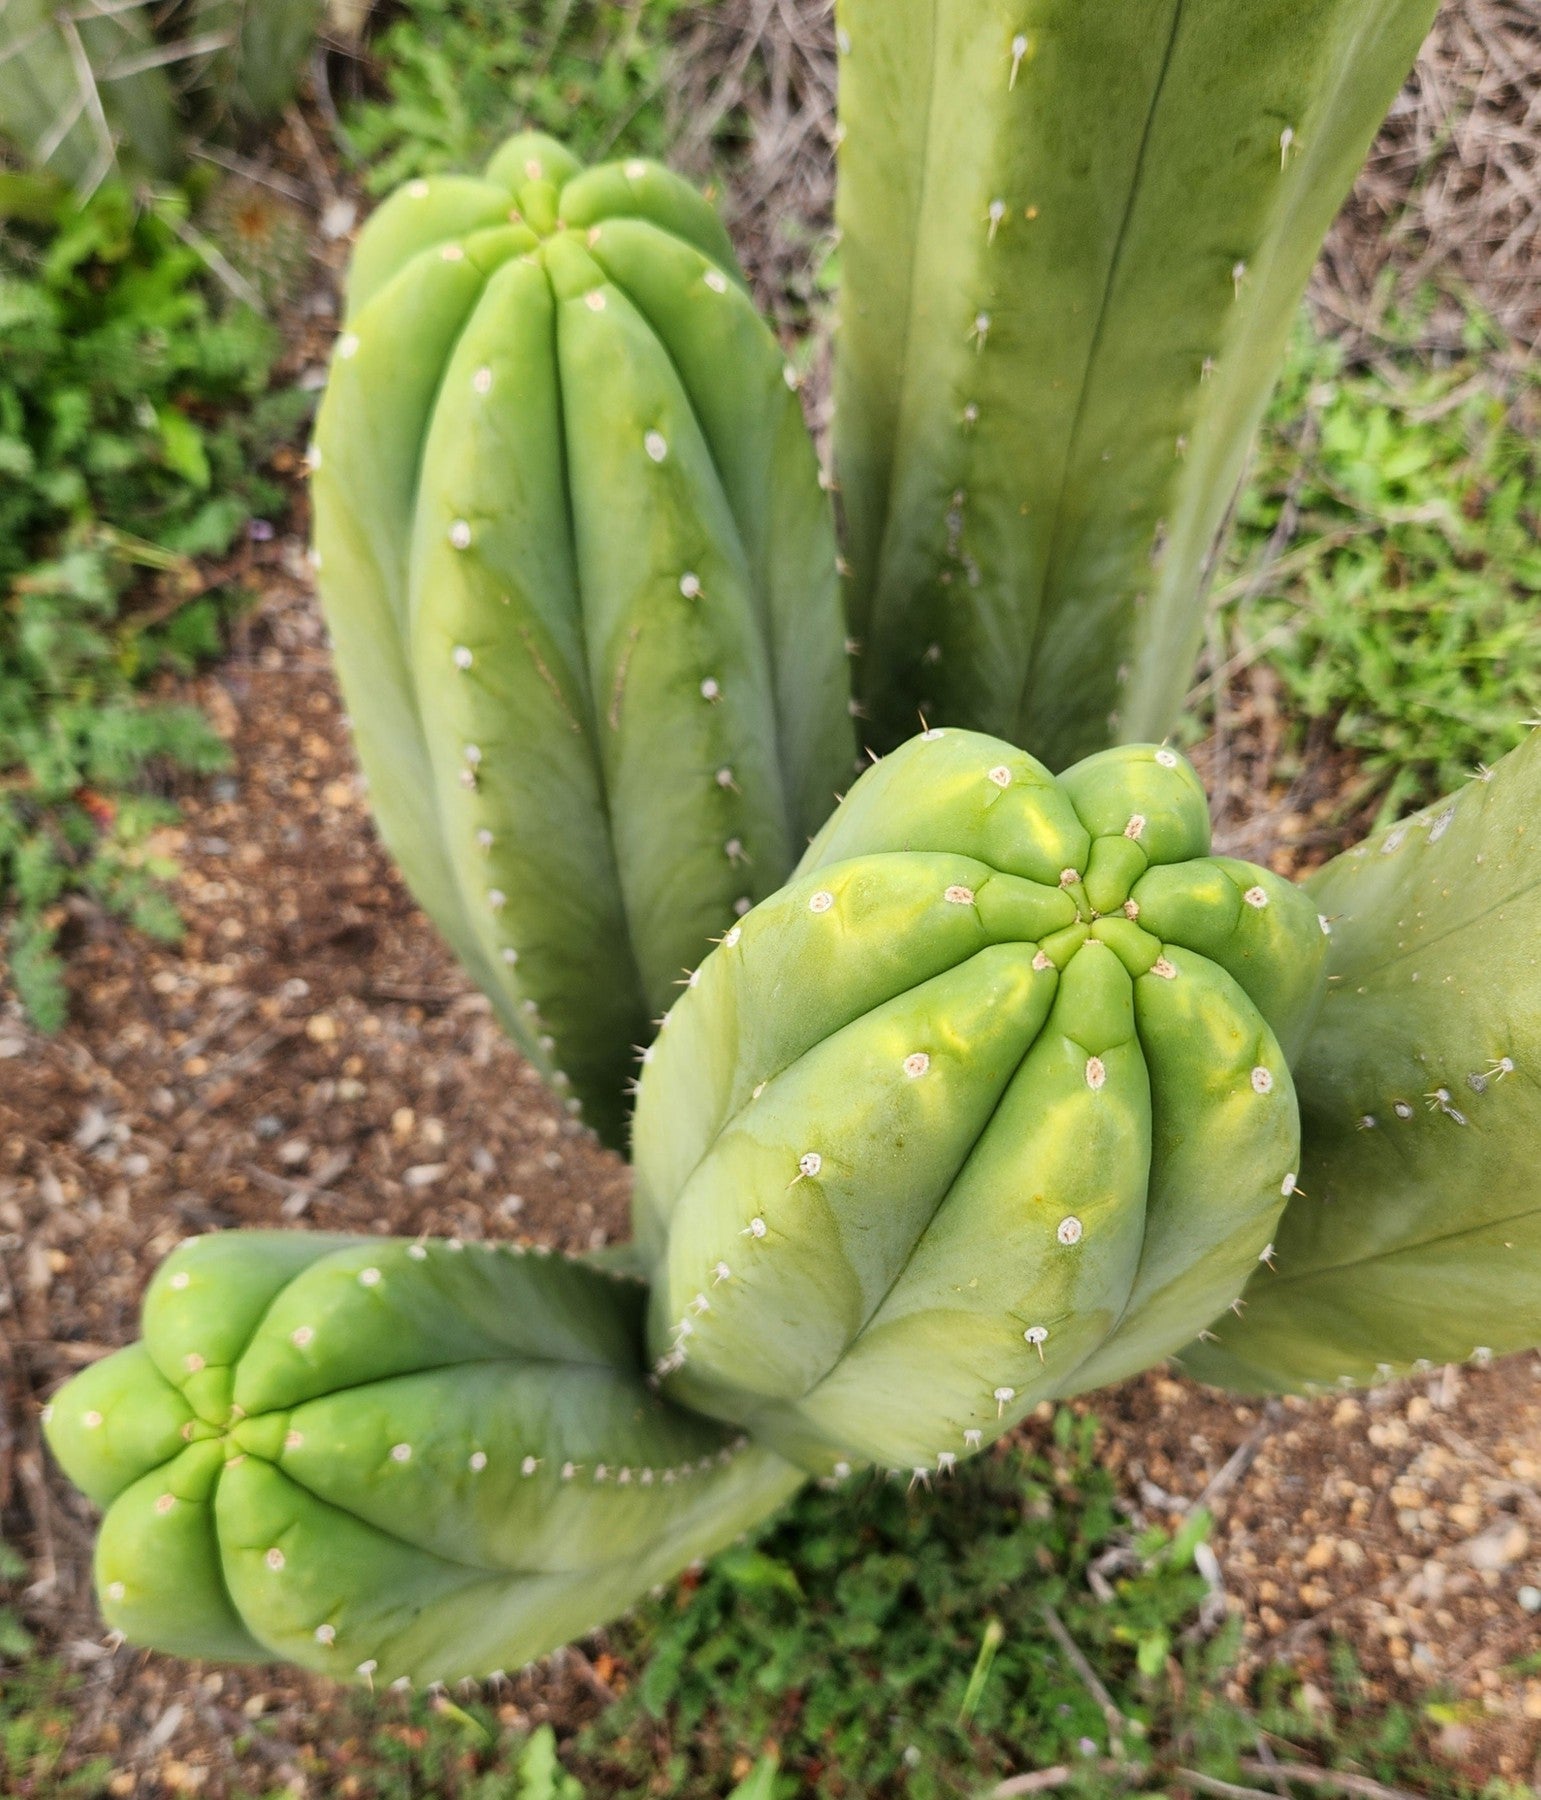 #EC358 EXACT Trichocereus Pachanoi "Pierre" Cactus Cutting 8"-Cactus - Large - Exact-The Succulent Source